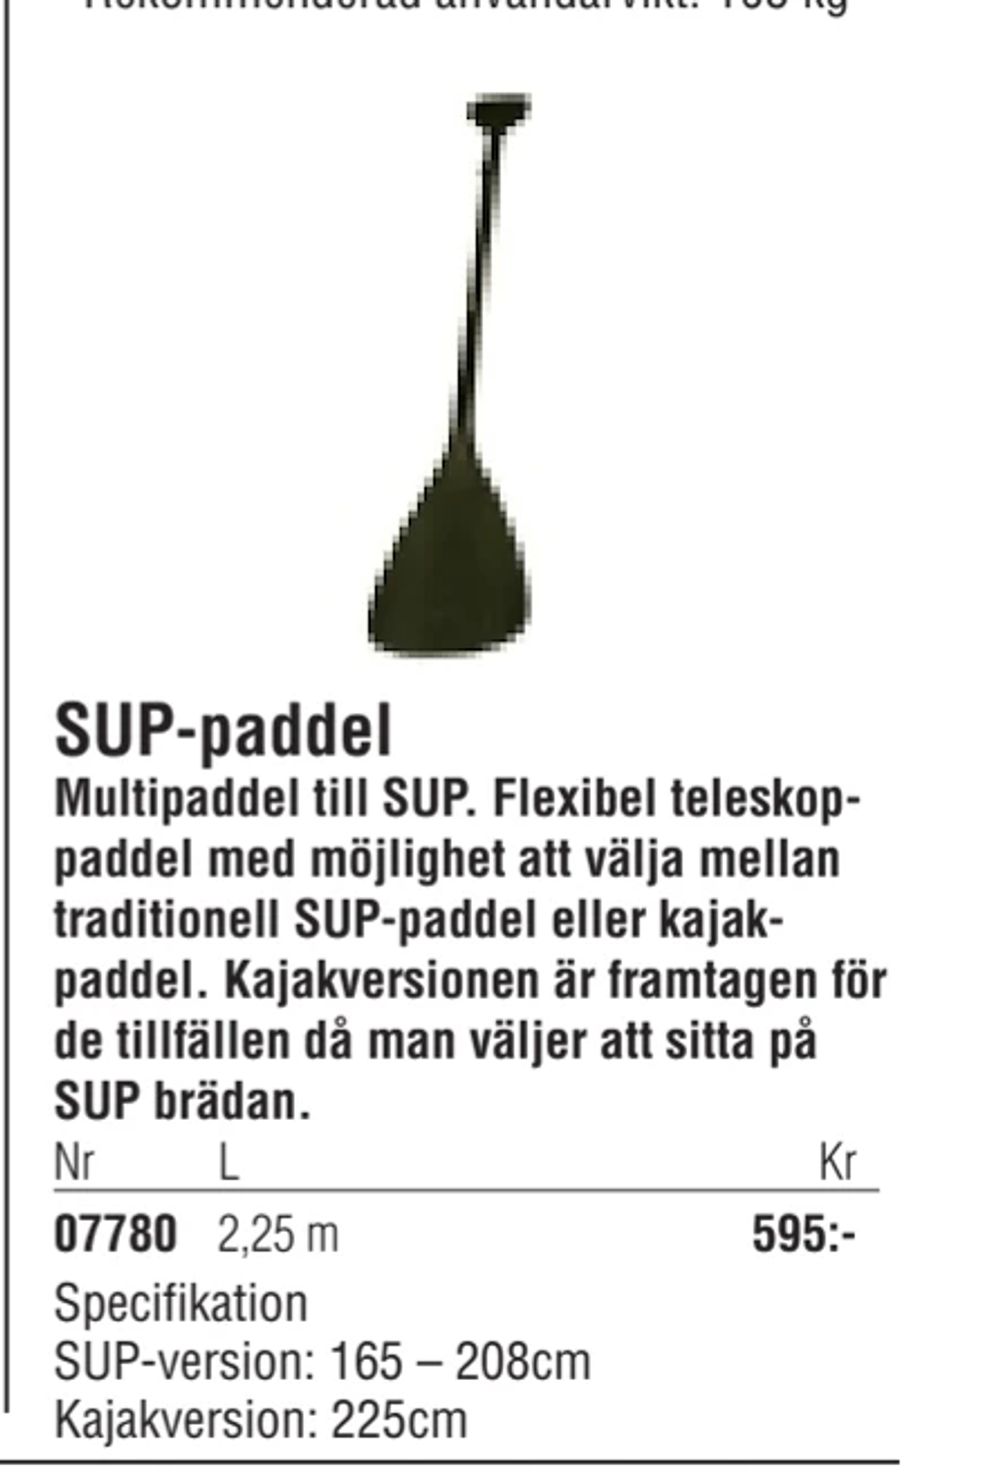 Erbjudanden på SUP-paddel från Erlandsons Brygga för 595 kr